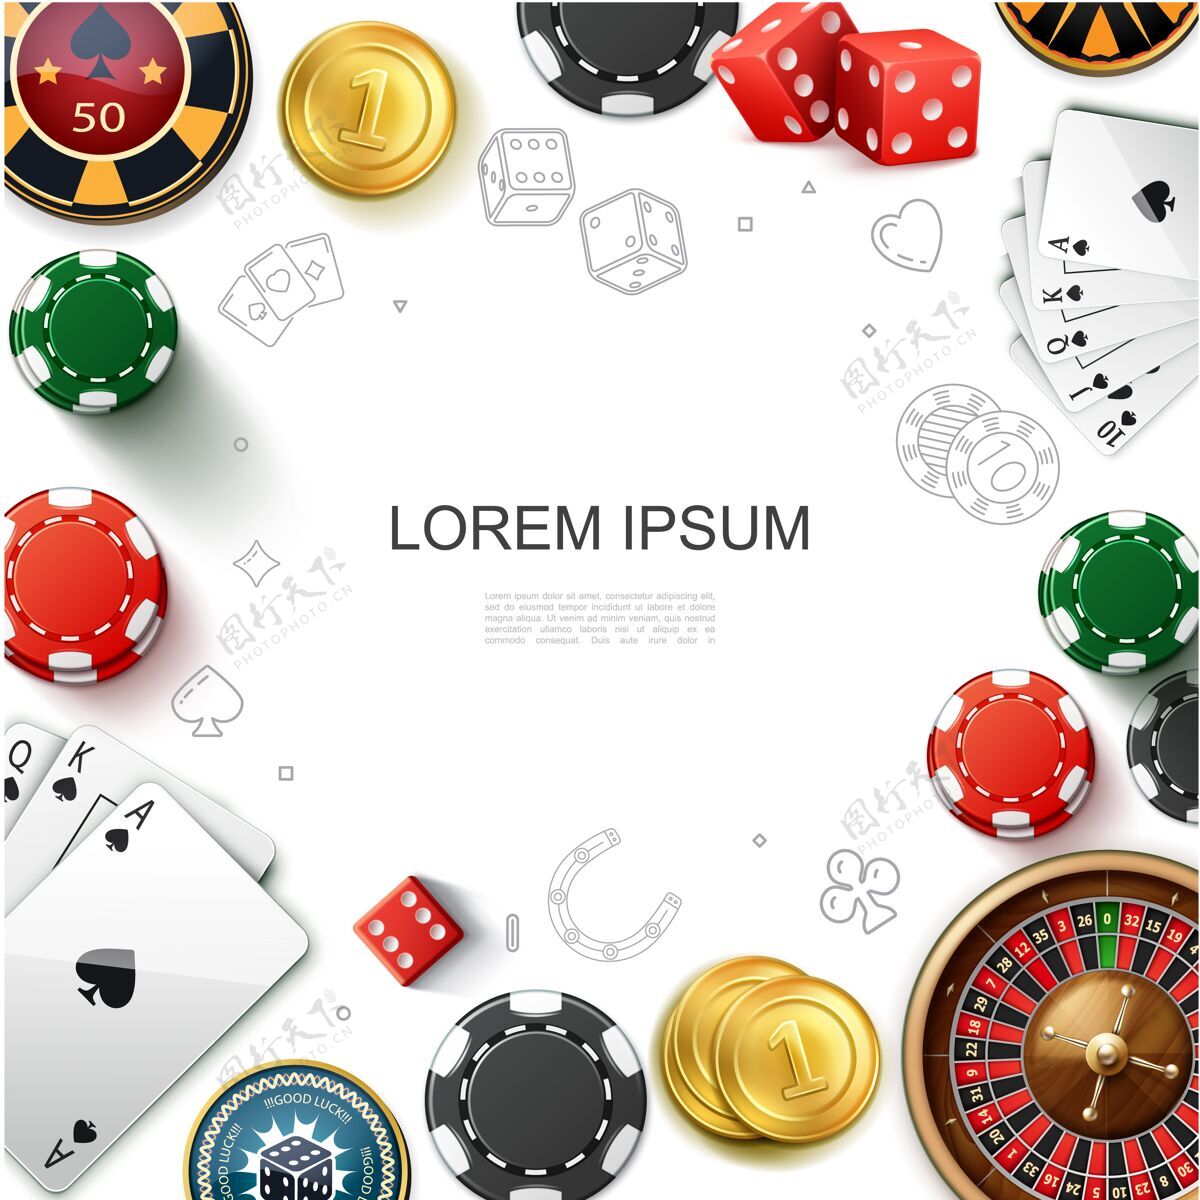 游戏现实赌场赌博与轮盘赌轮纸牌游戏芯片骰子和金币插图模板筹码现实插图